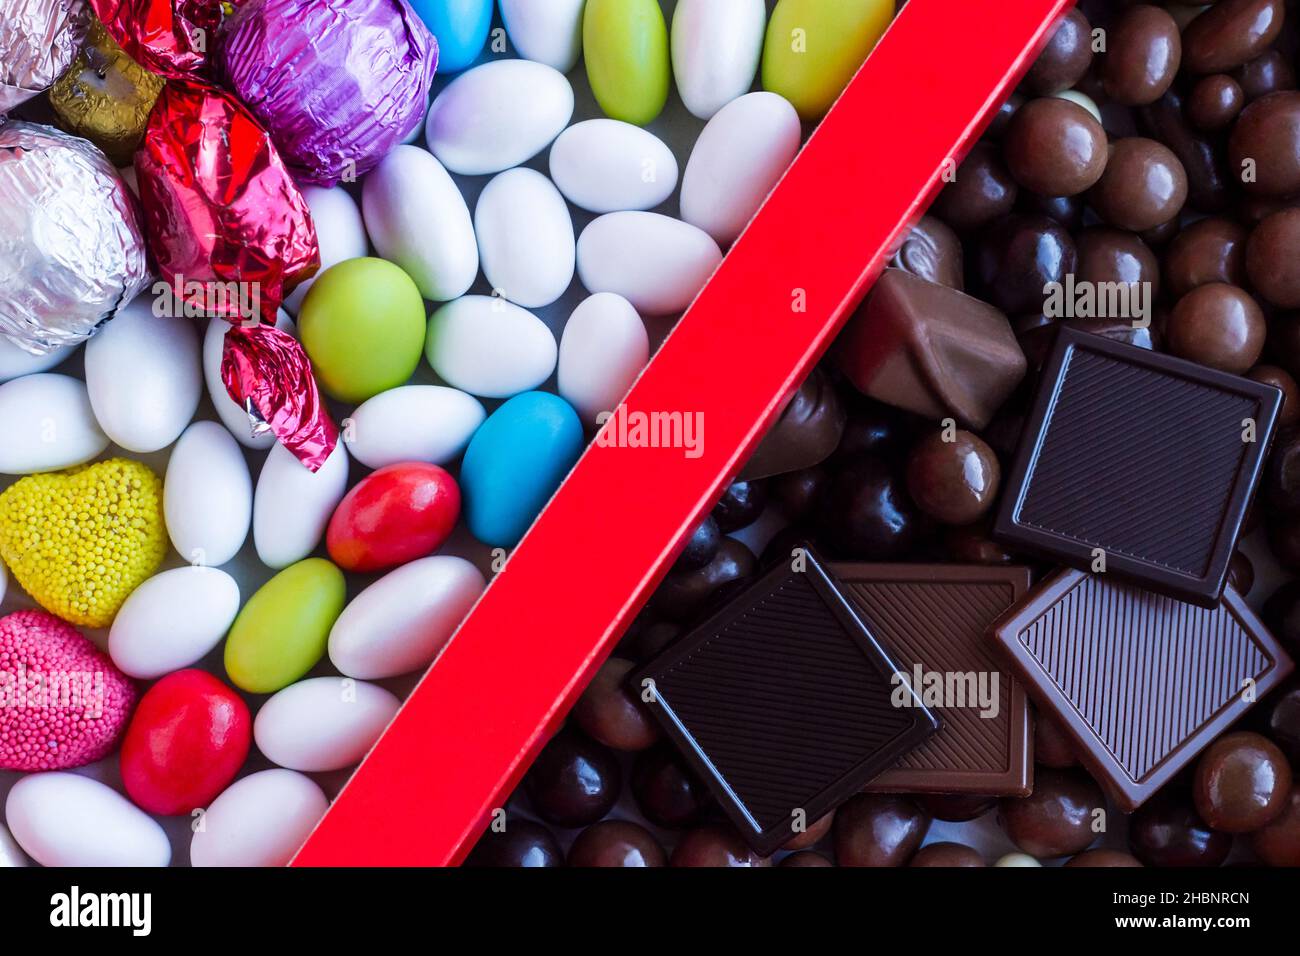 Bunte Mandel-Bonbons und Chocolate Madlen in der roten Pappschachtel.in zwei geteilt aussehend. Stockfoto